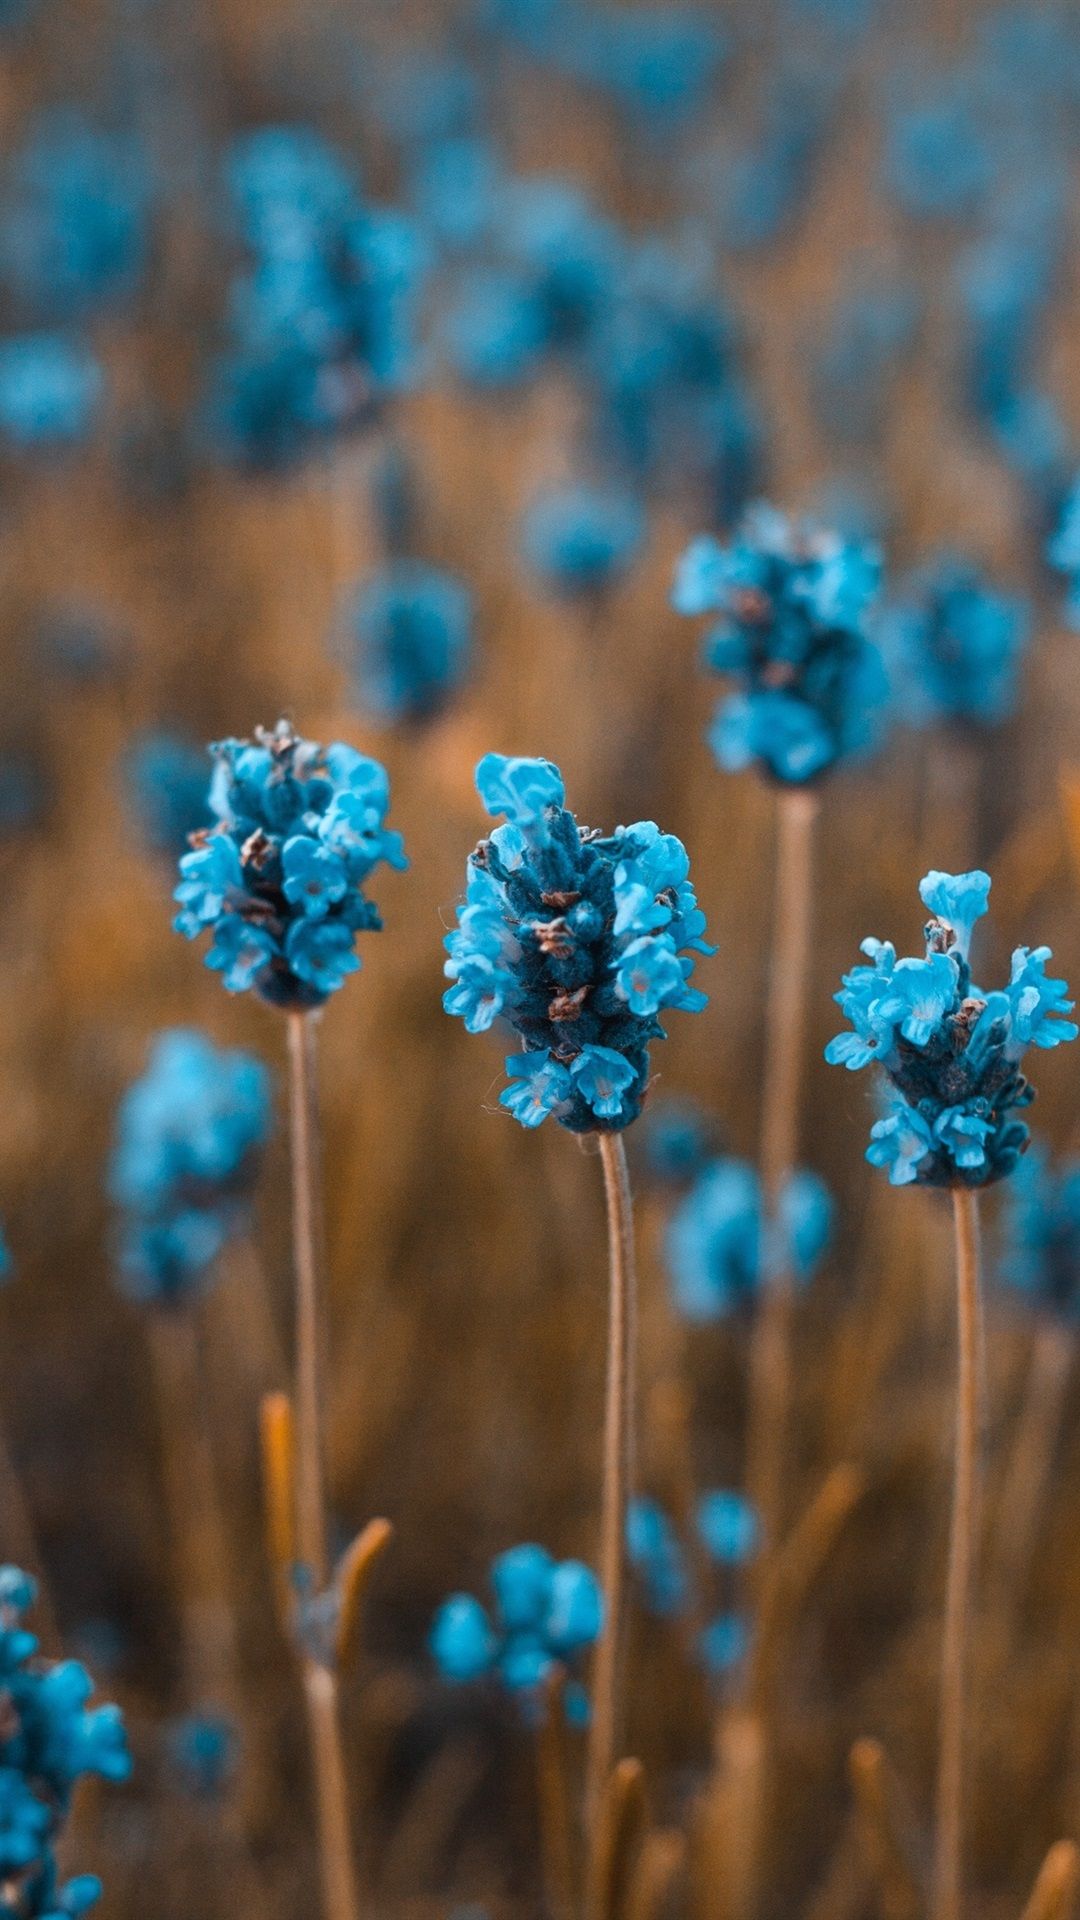 Wallpaper Little blue flowers field 3840x2160 UHD 4K Picture, Image